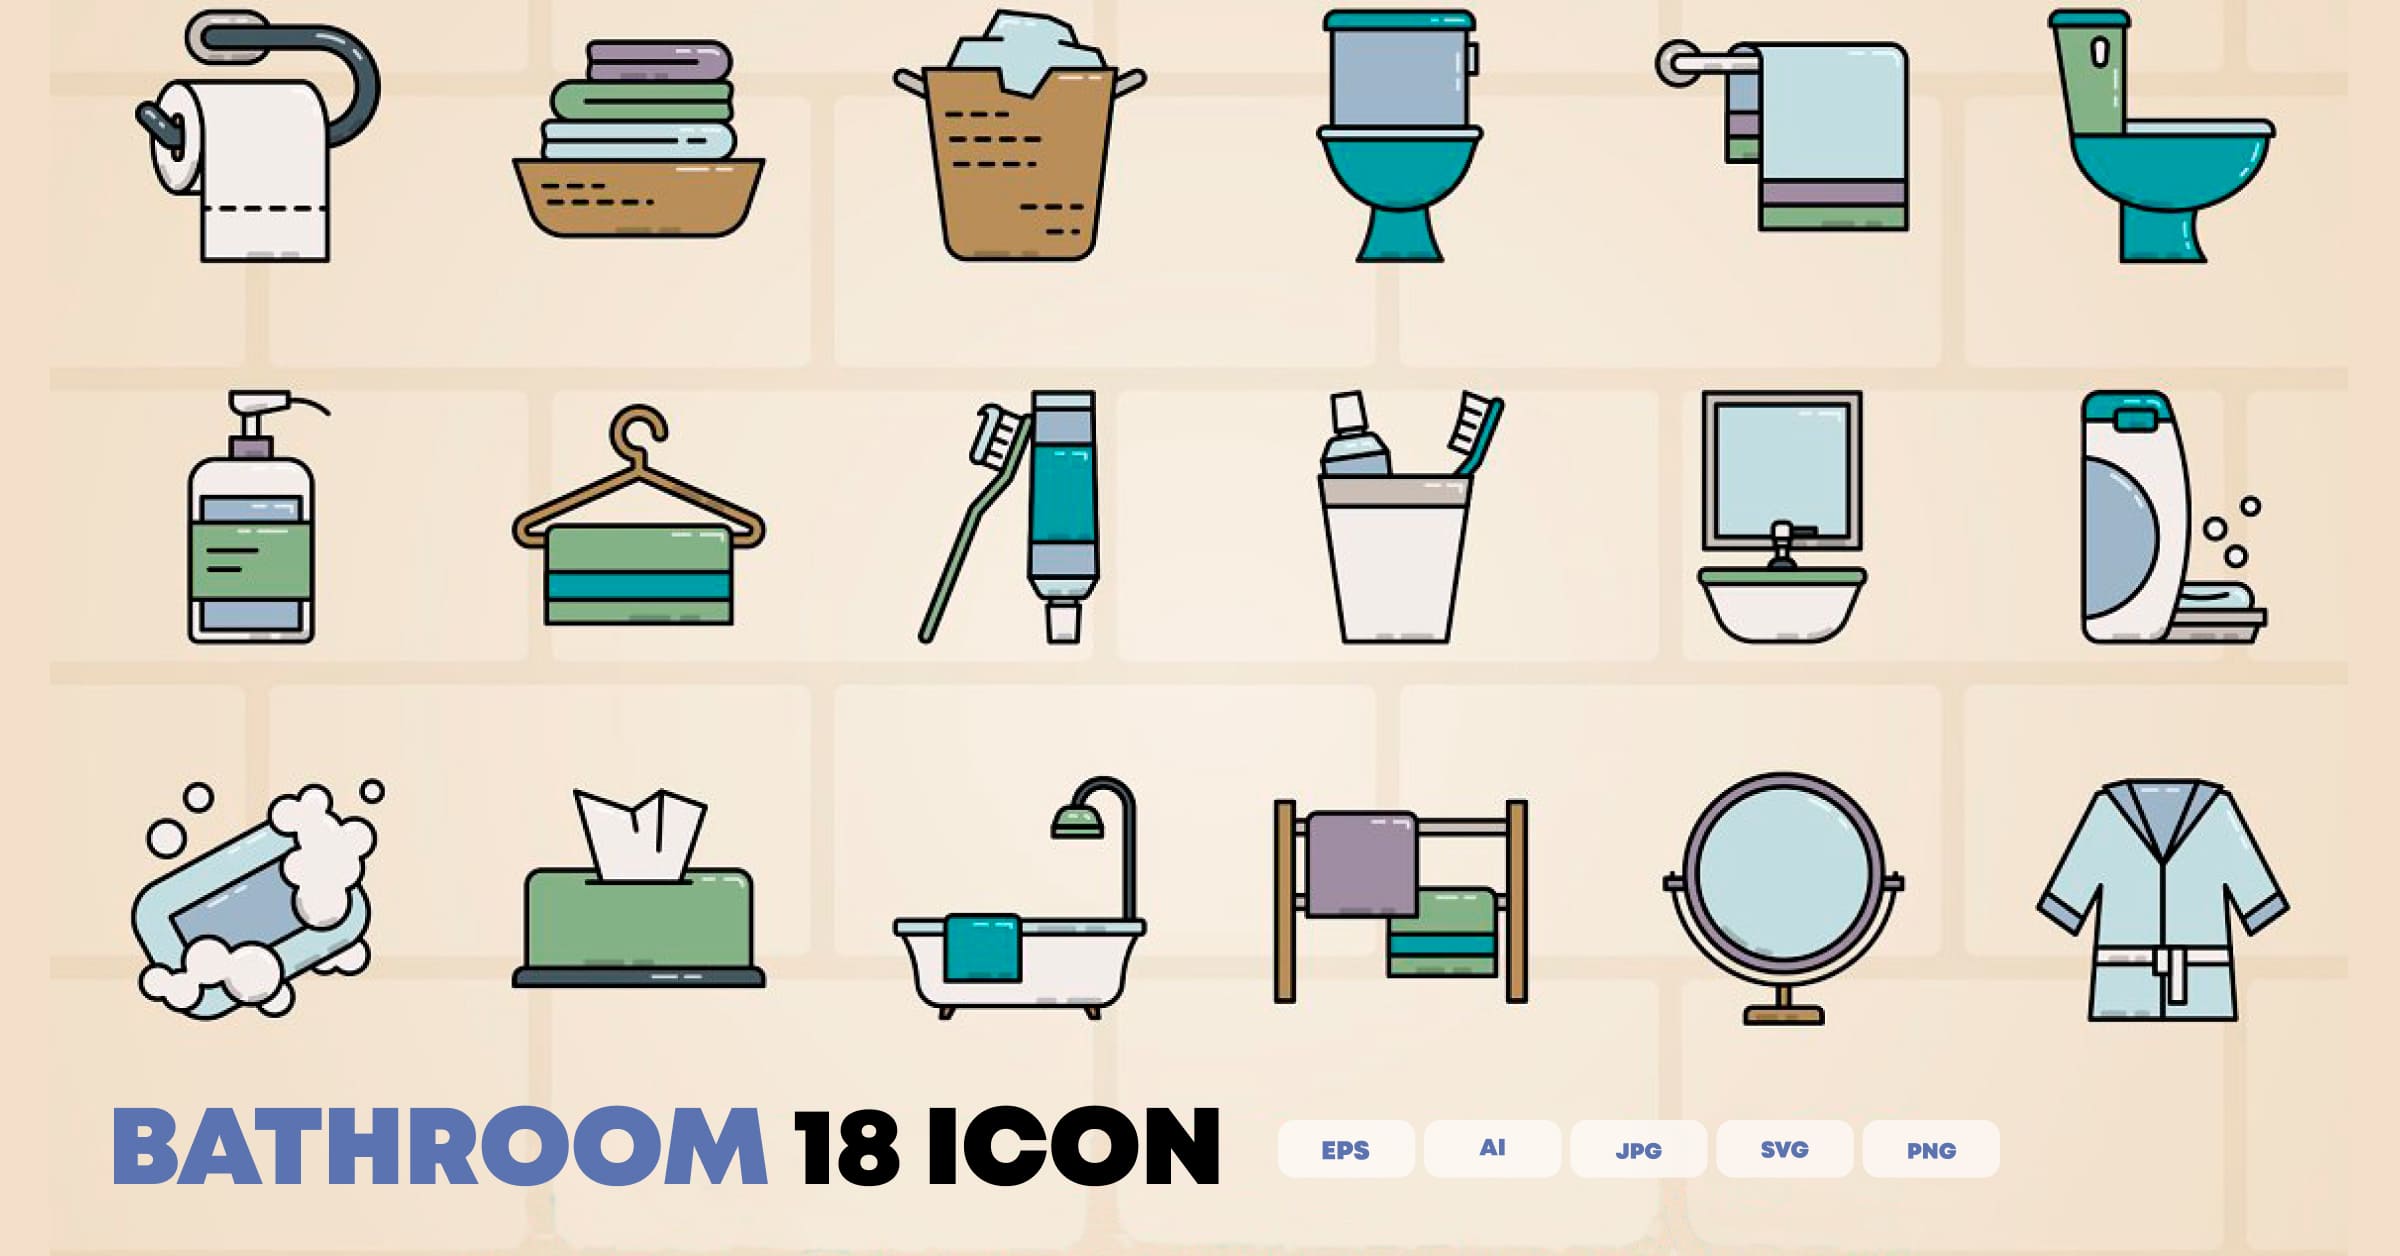 18 bathroom icon facebook